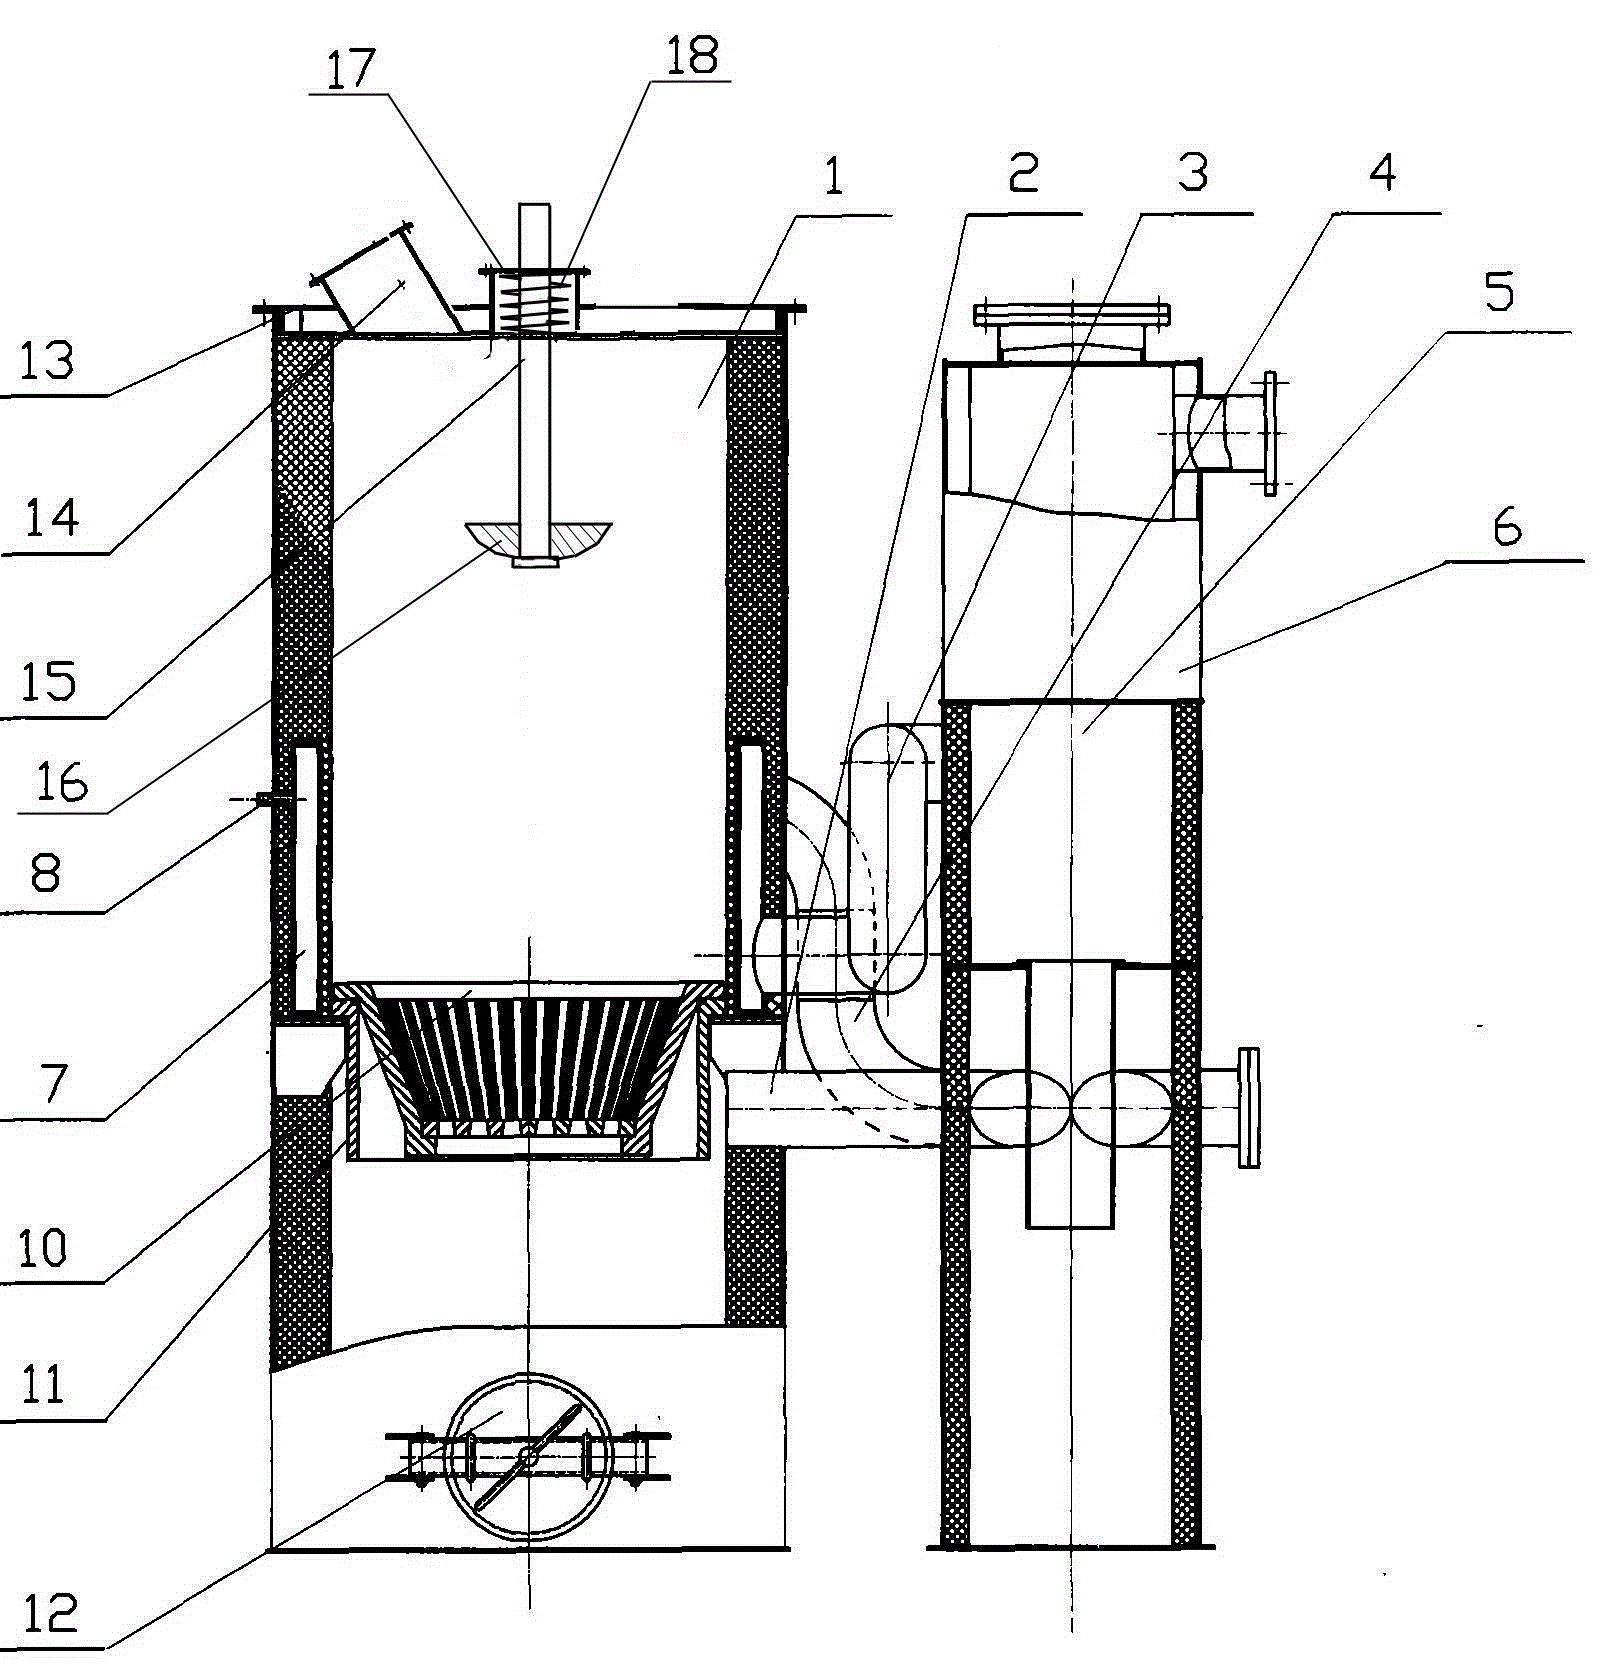 气化炉结构图图片